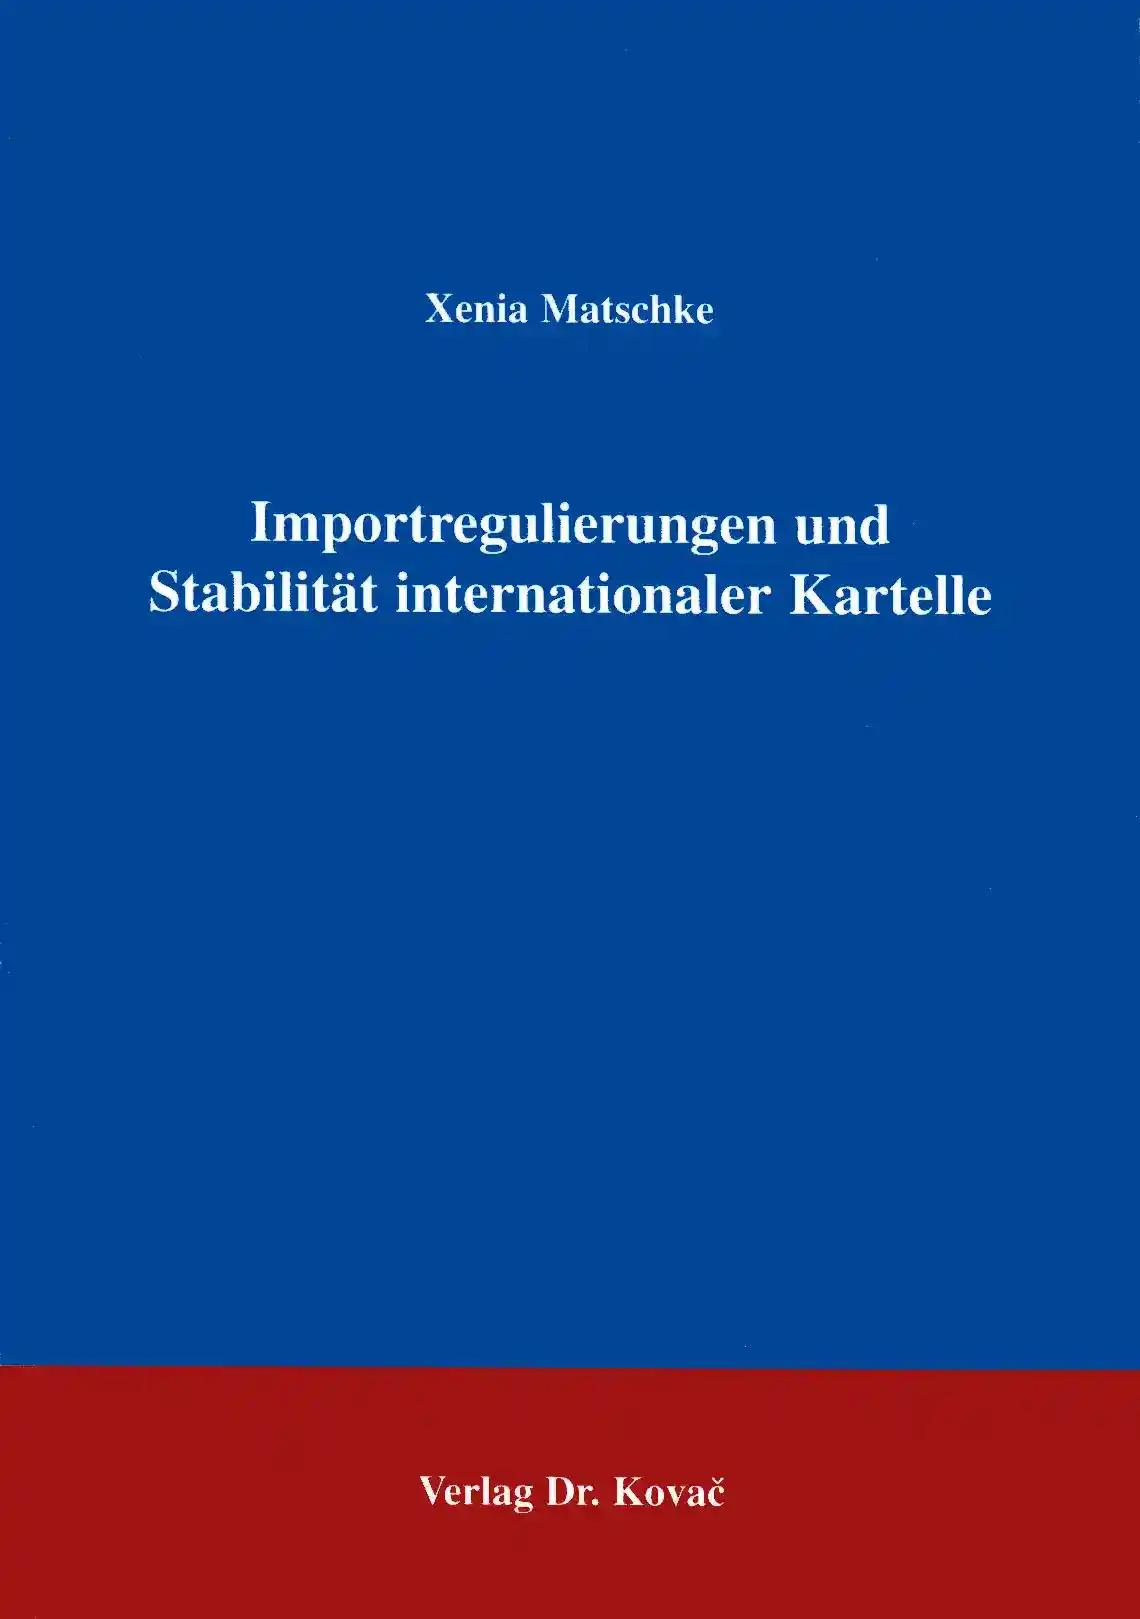 Importregulierungen und Stabilität internationaler Kartelle, - Xenia Matschke